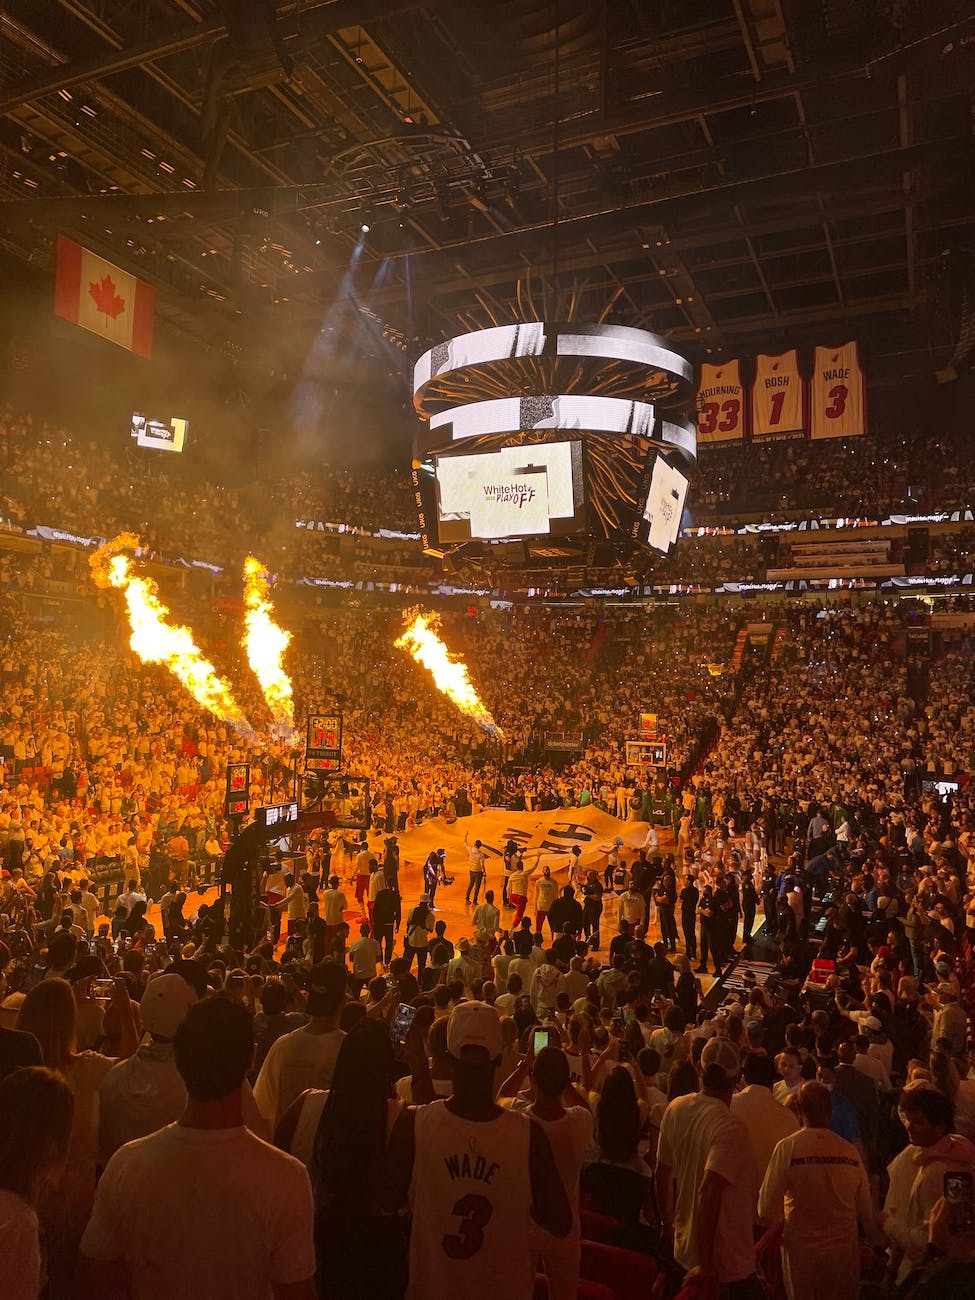 El Miami Heat: Una franquicia de baloncesto con historia y pasión